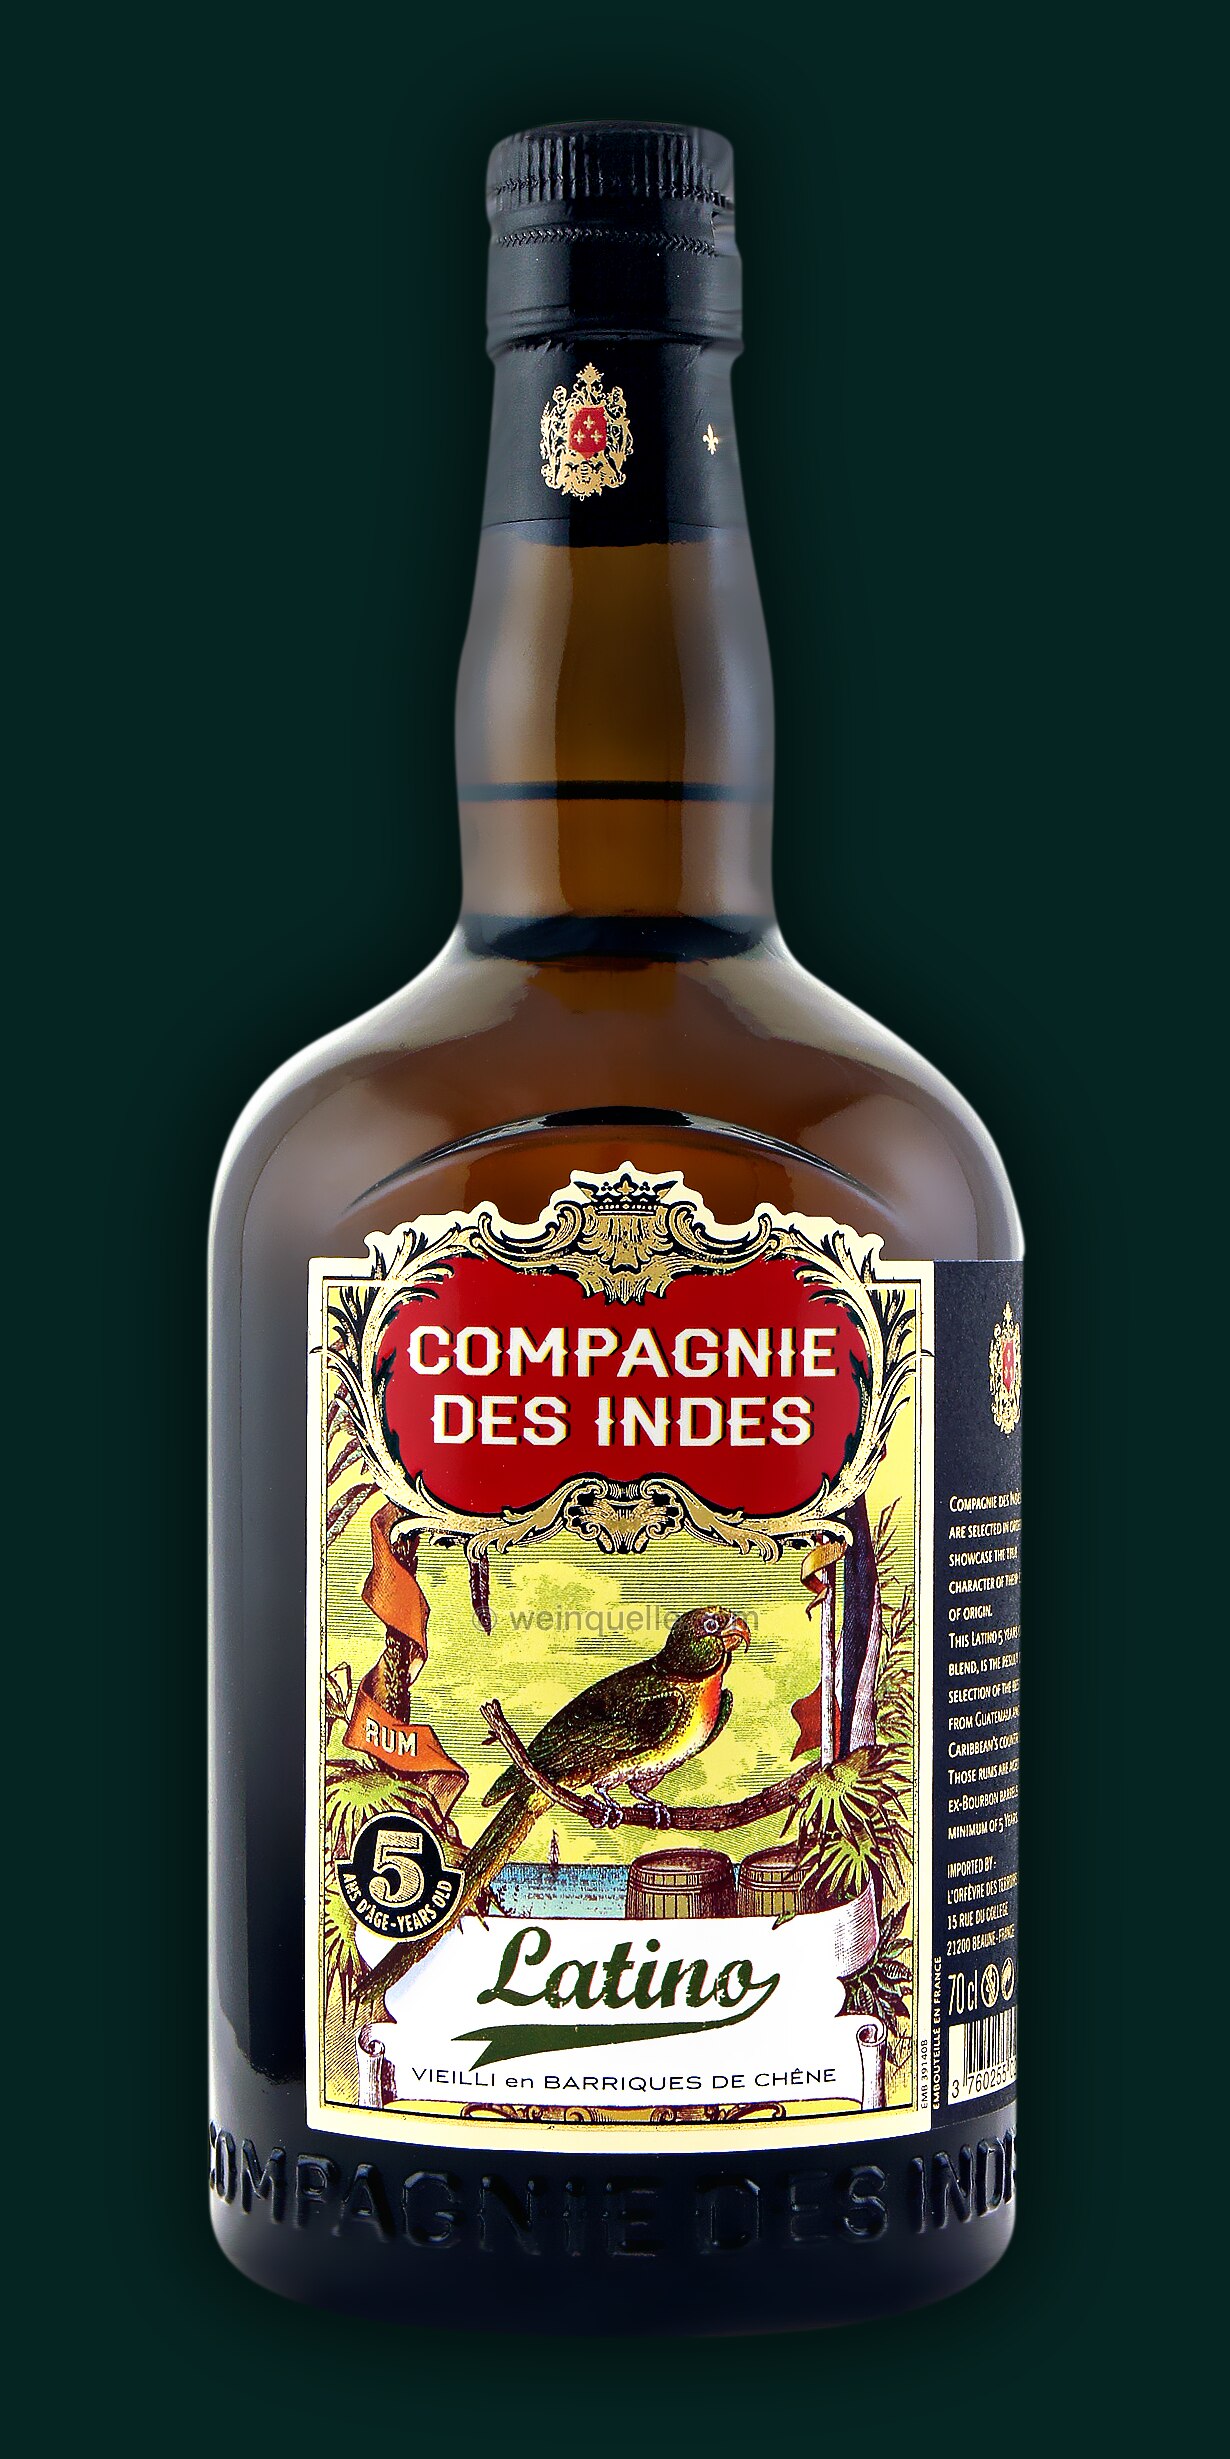 Compagnie Des 33,50 € - 5 Indes Rum Weinquelle Years, Lühmann Latino